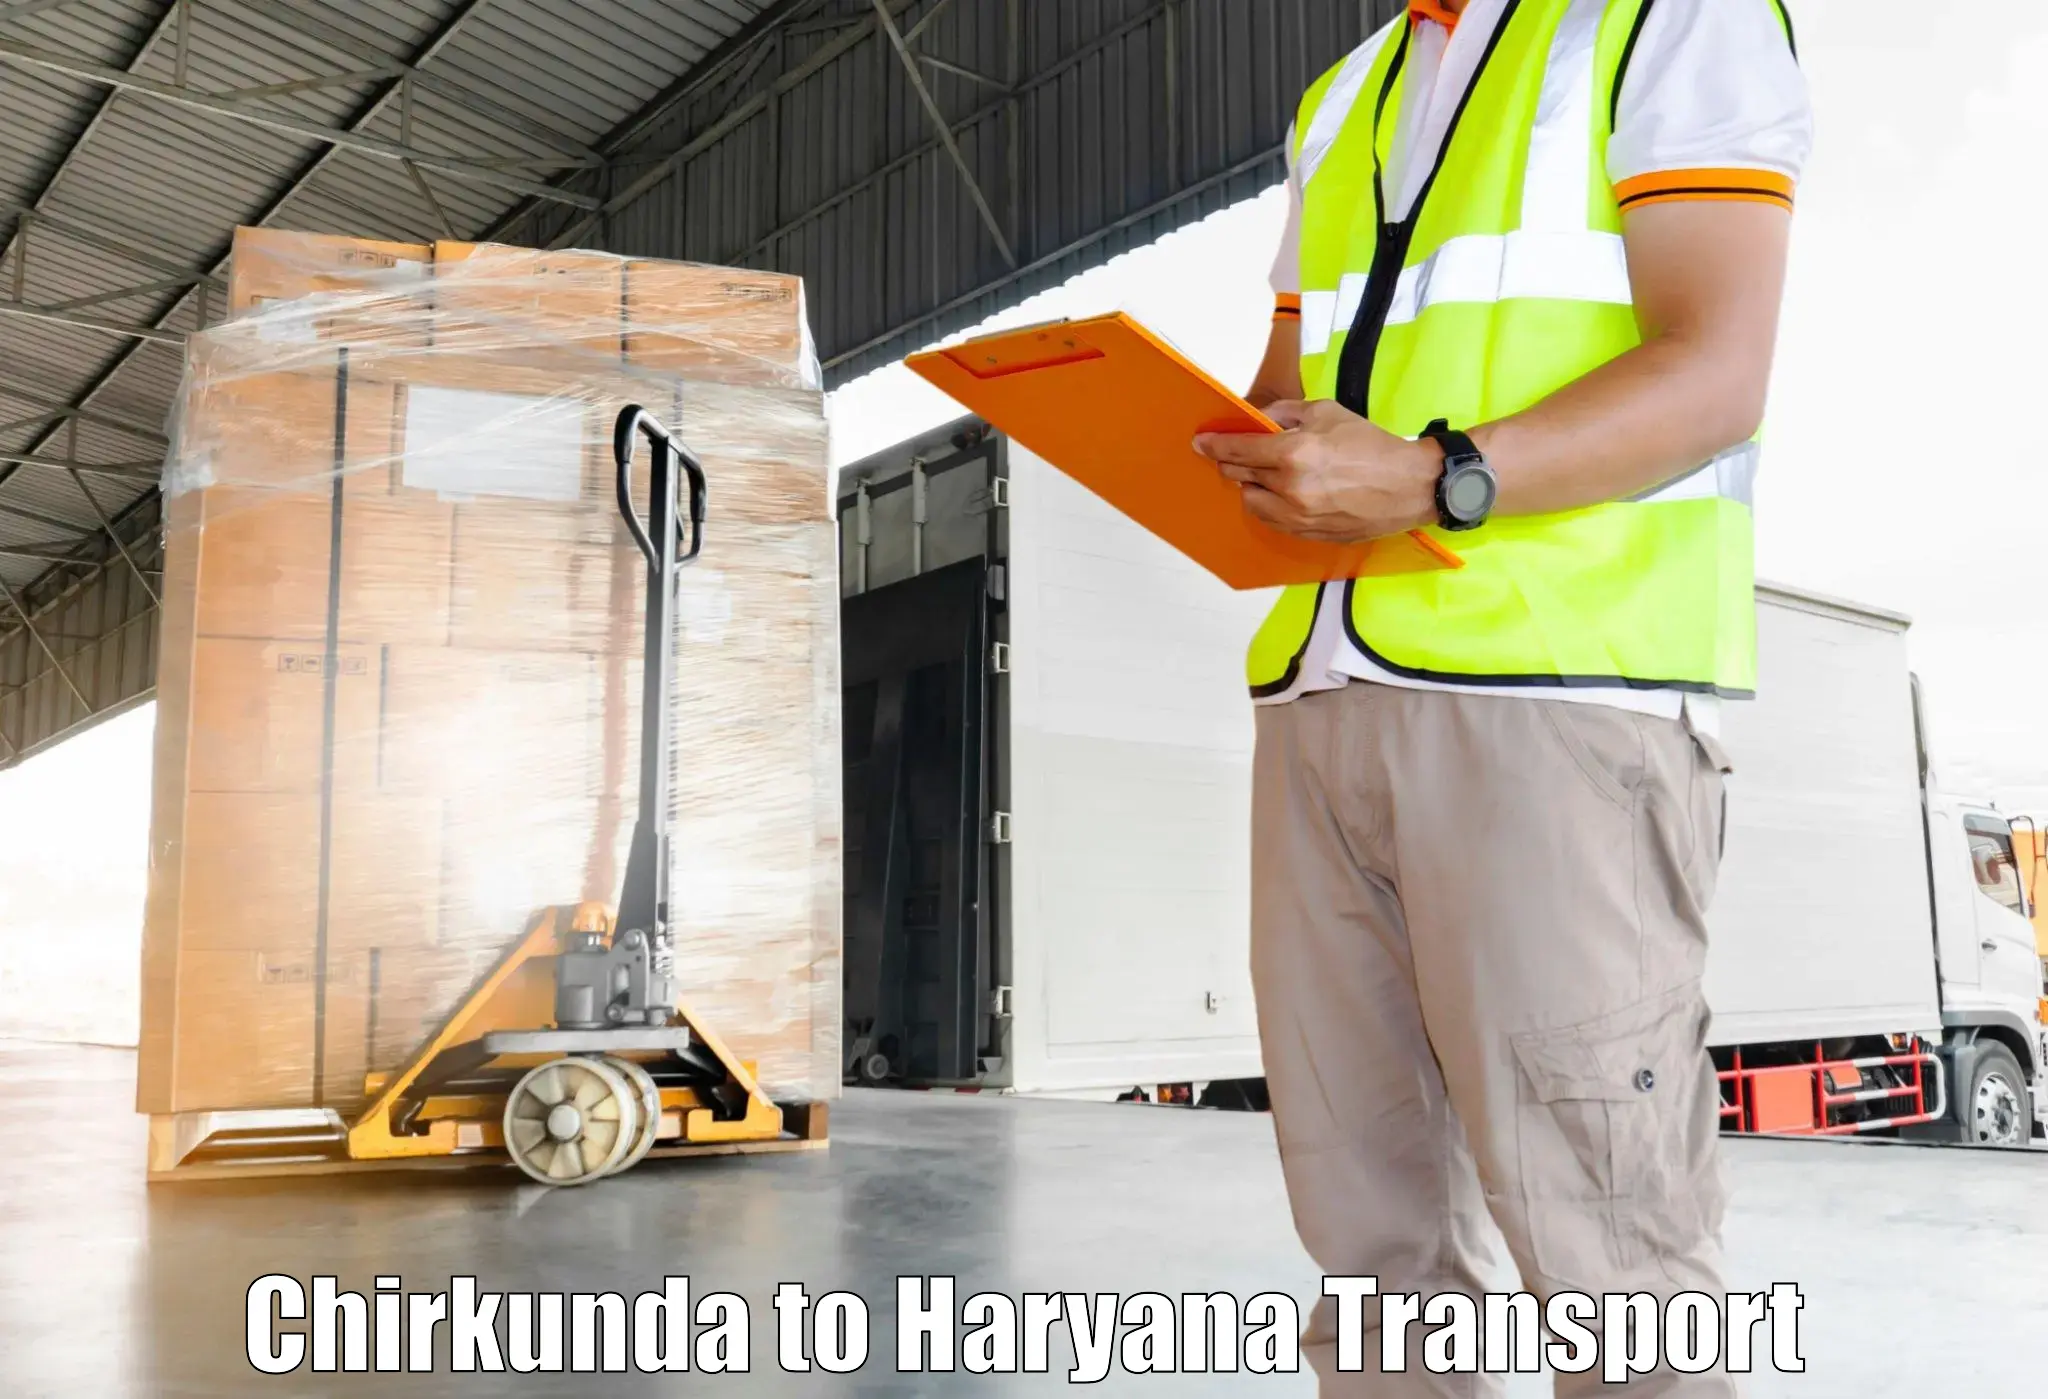 Transportation solution services in Chirkunda to Naraingarh